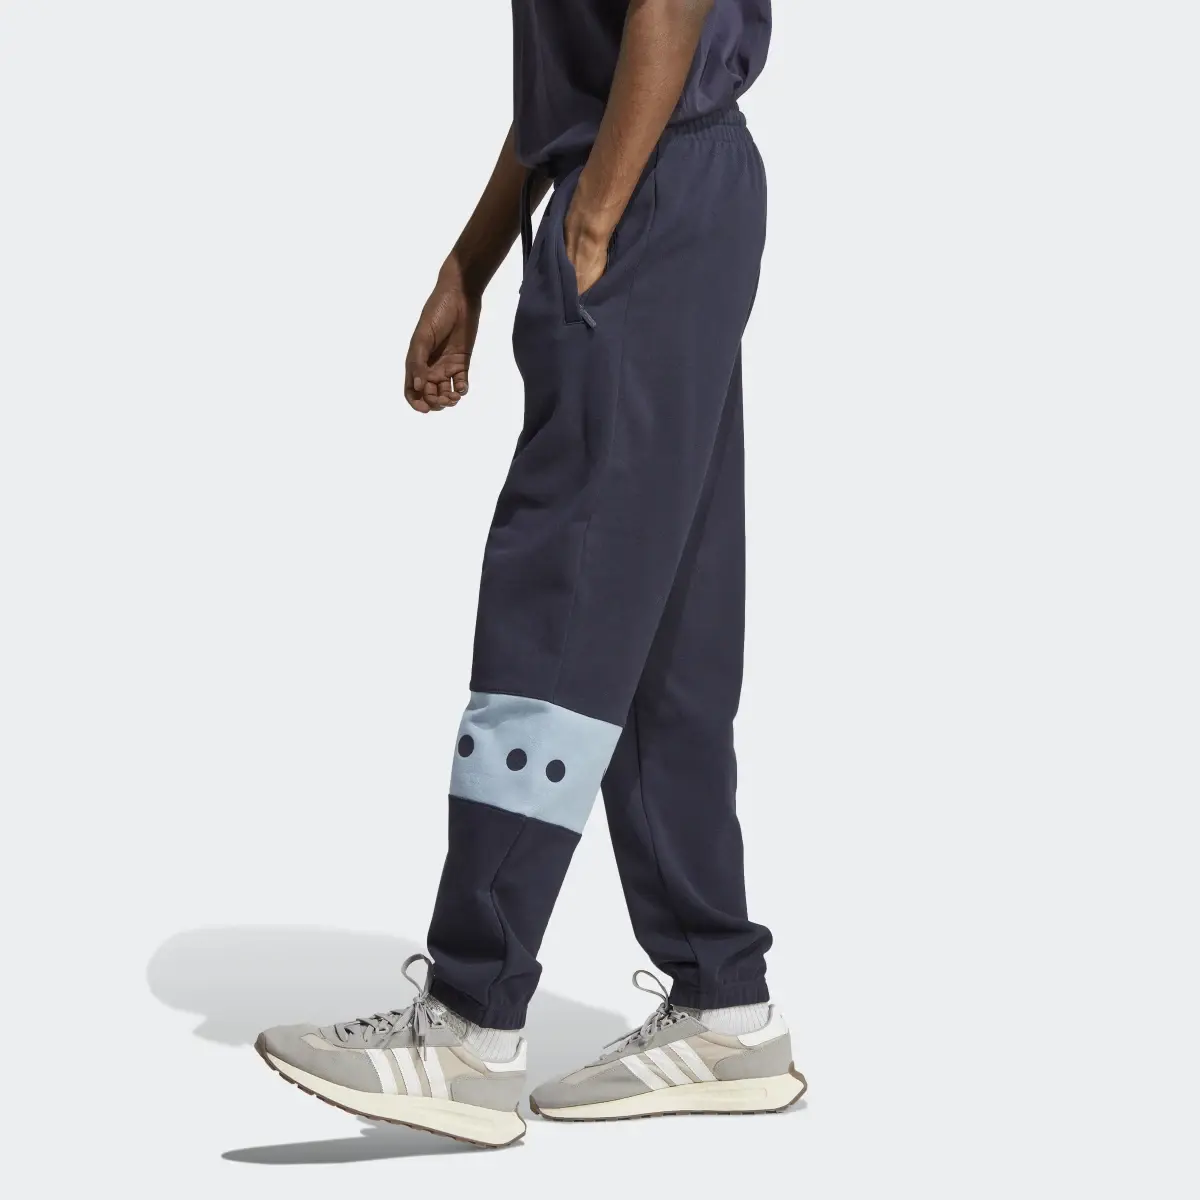 Adidas Pants RIFTA City Boy. 2